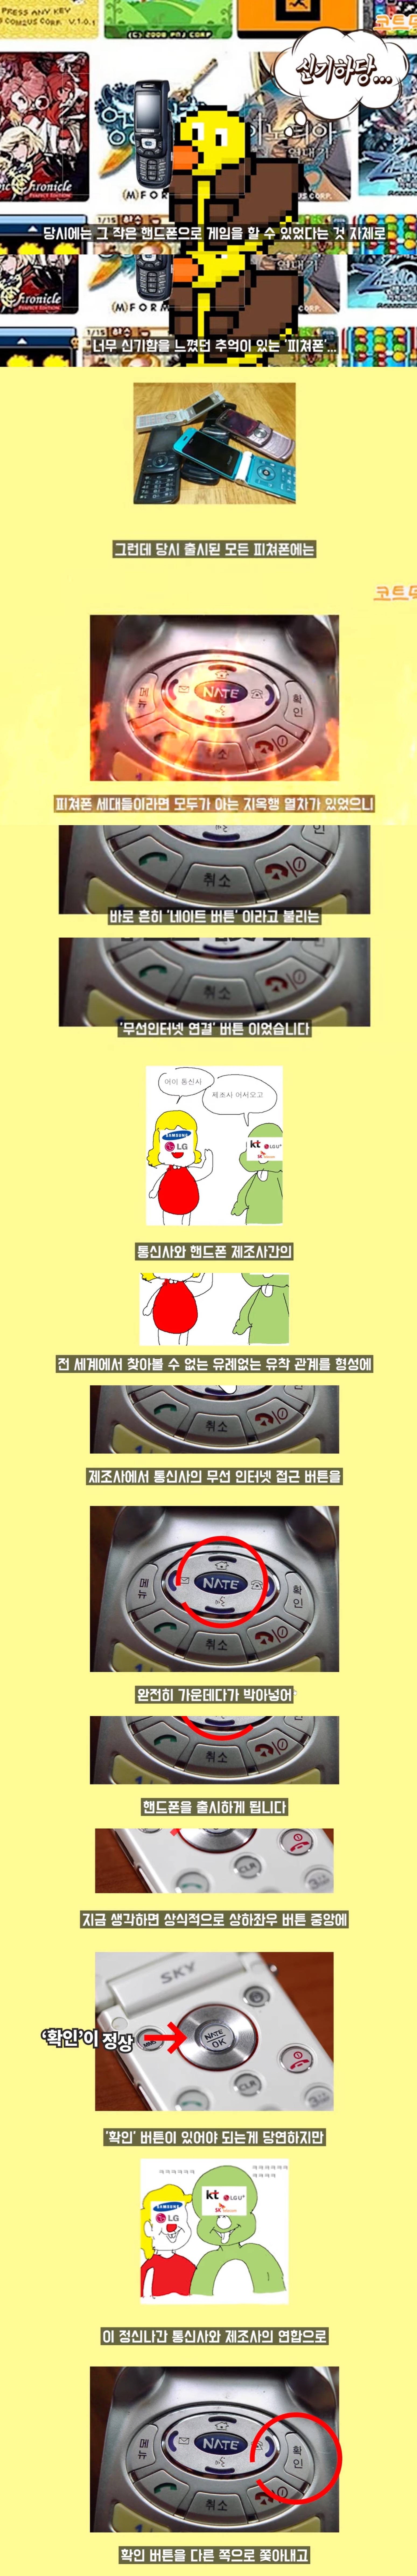 아이폰이 없앤 통신사들의 양아치짓 (feat 추억의 '그'버튼) | 인스티즈